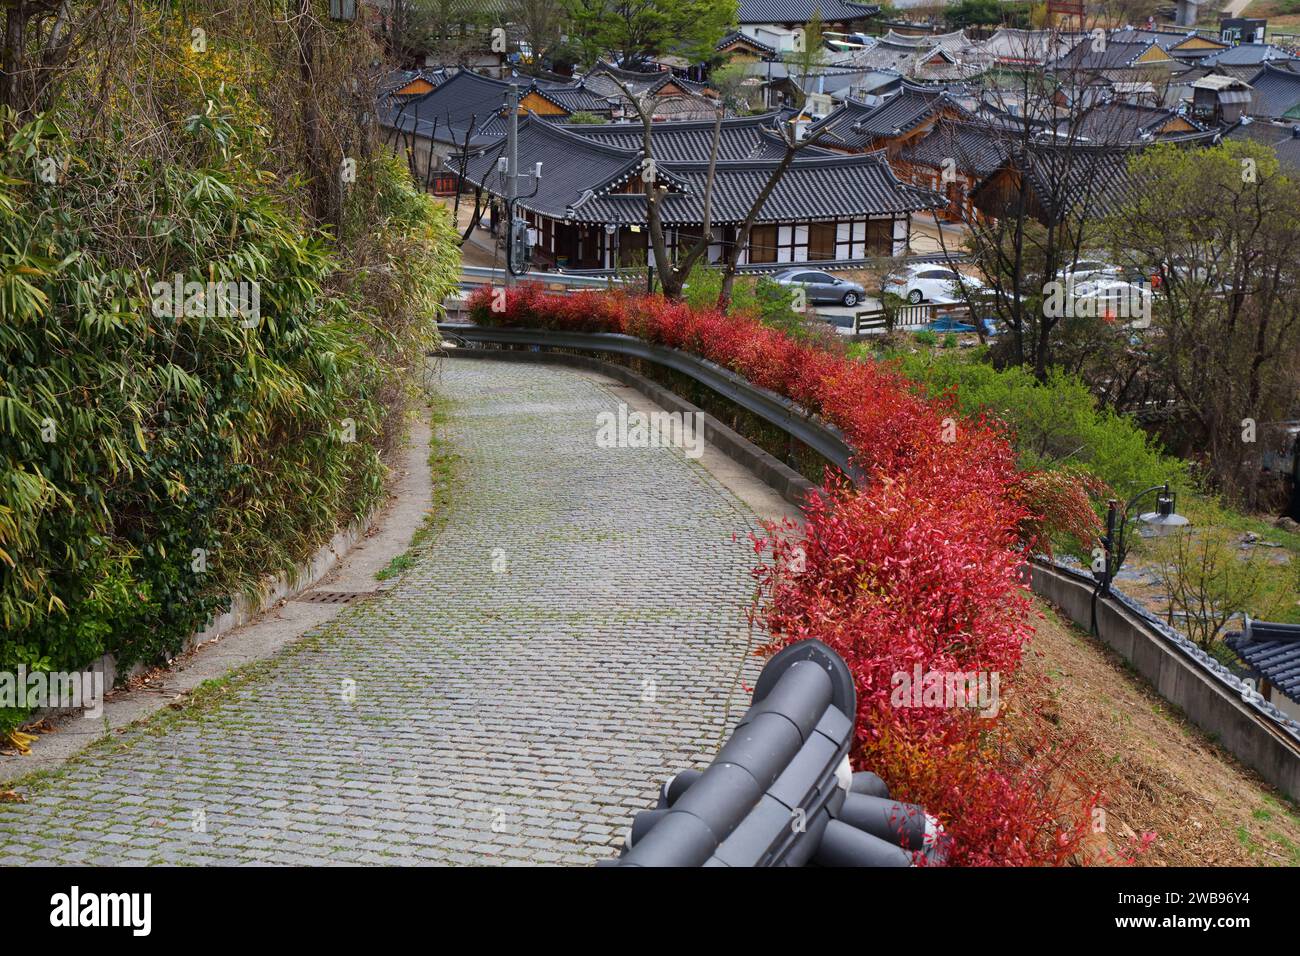 Paesaggio urbano del villaggio di Jeonju Hanok in Corea del Sud. Quartiere di tradizionale architettura coreana in legno con strada lastricata in pietra. Foto Stock